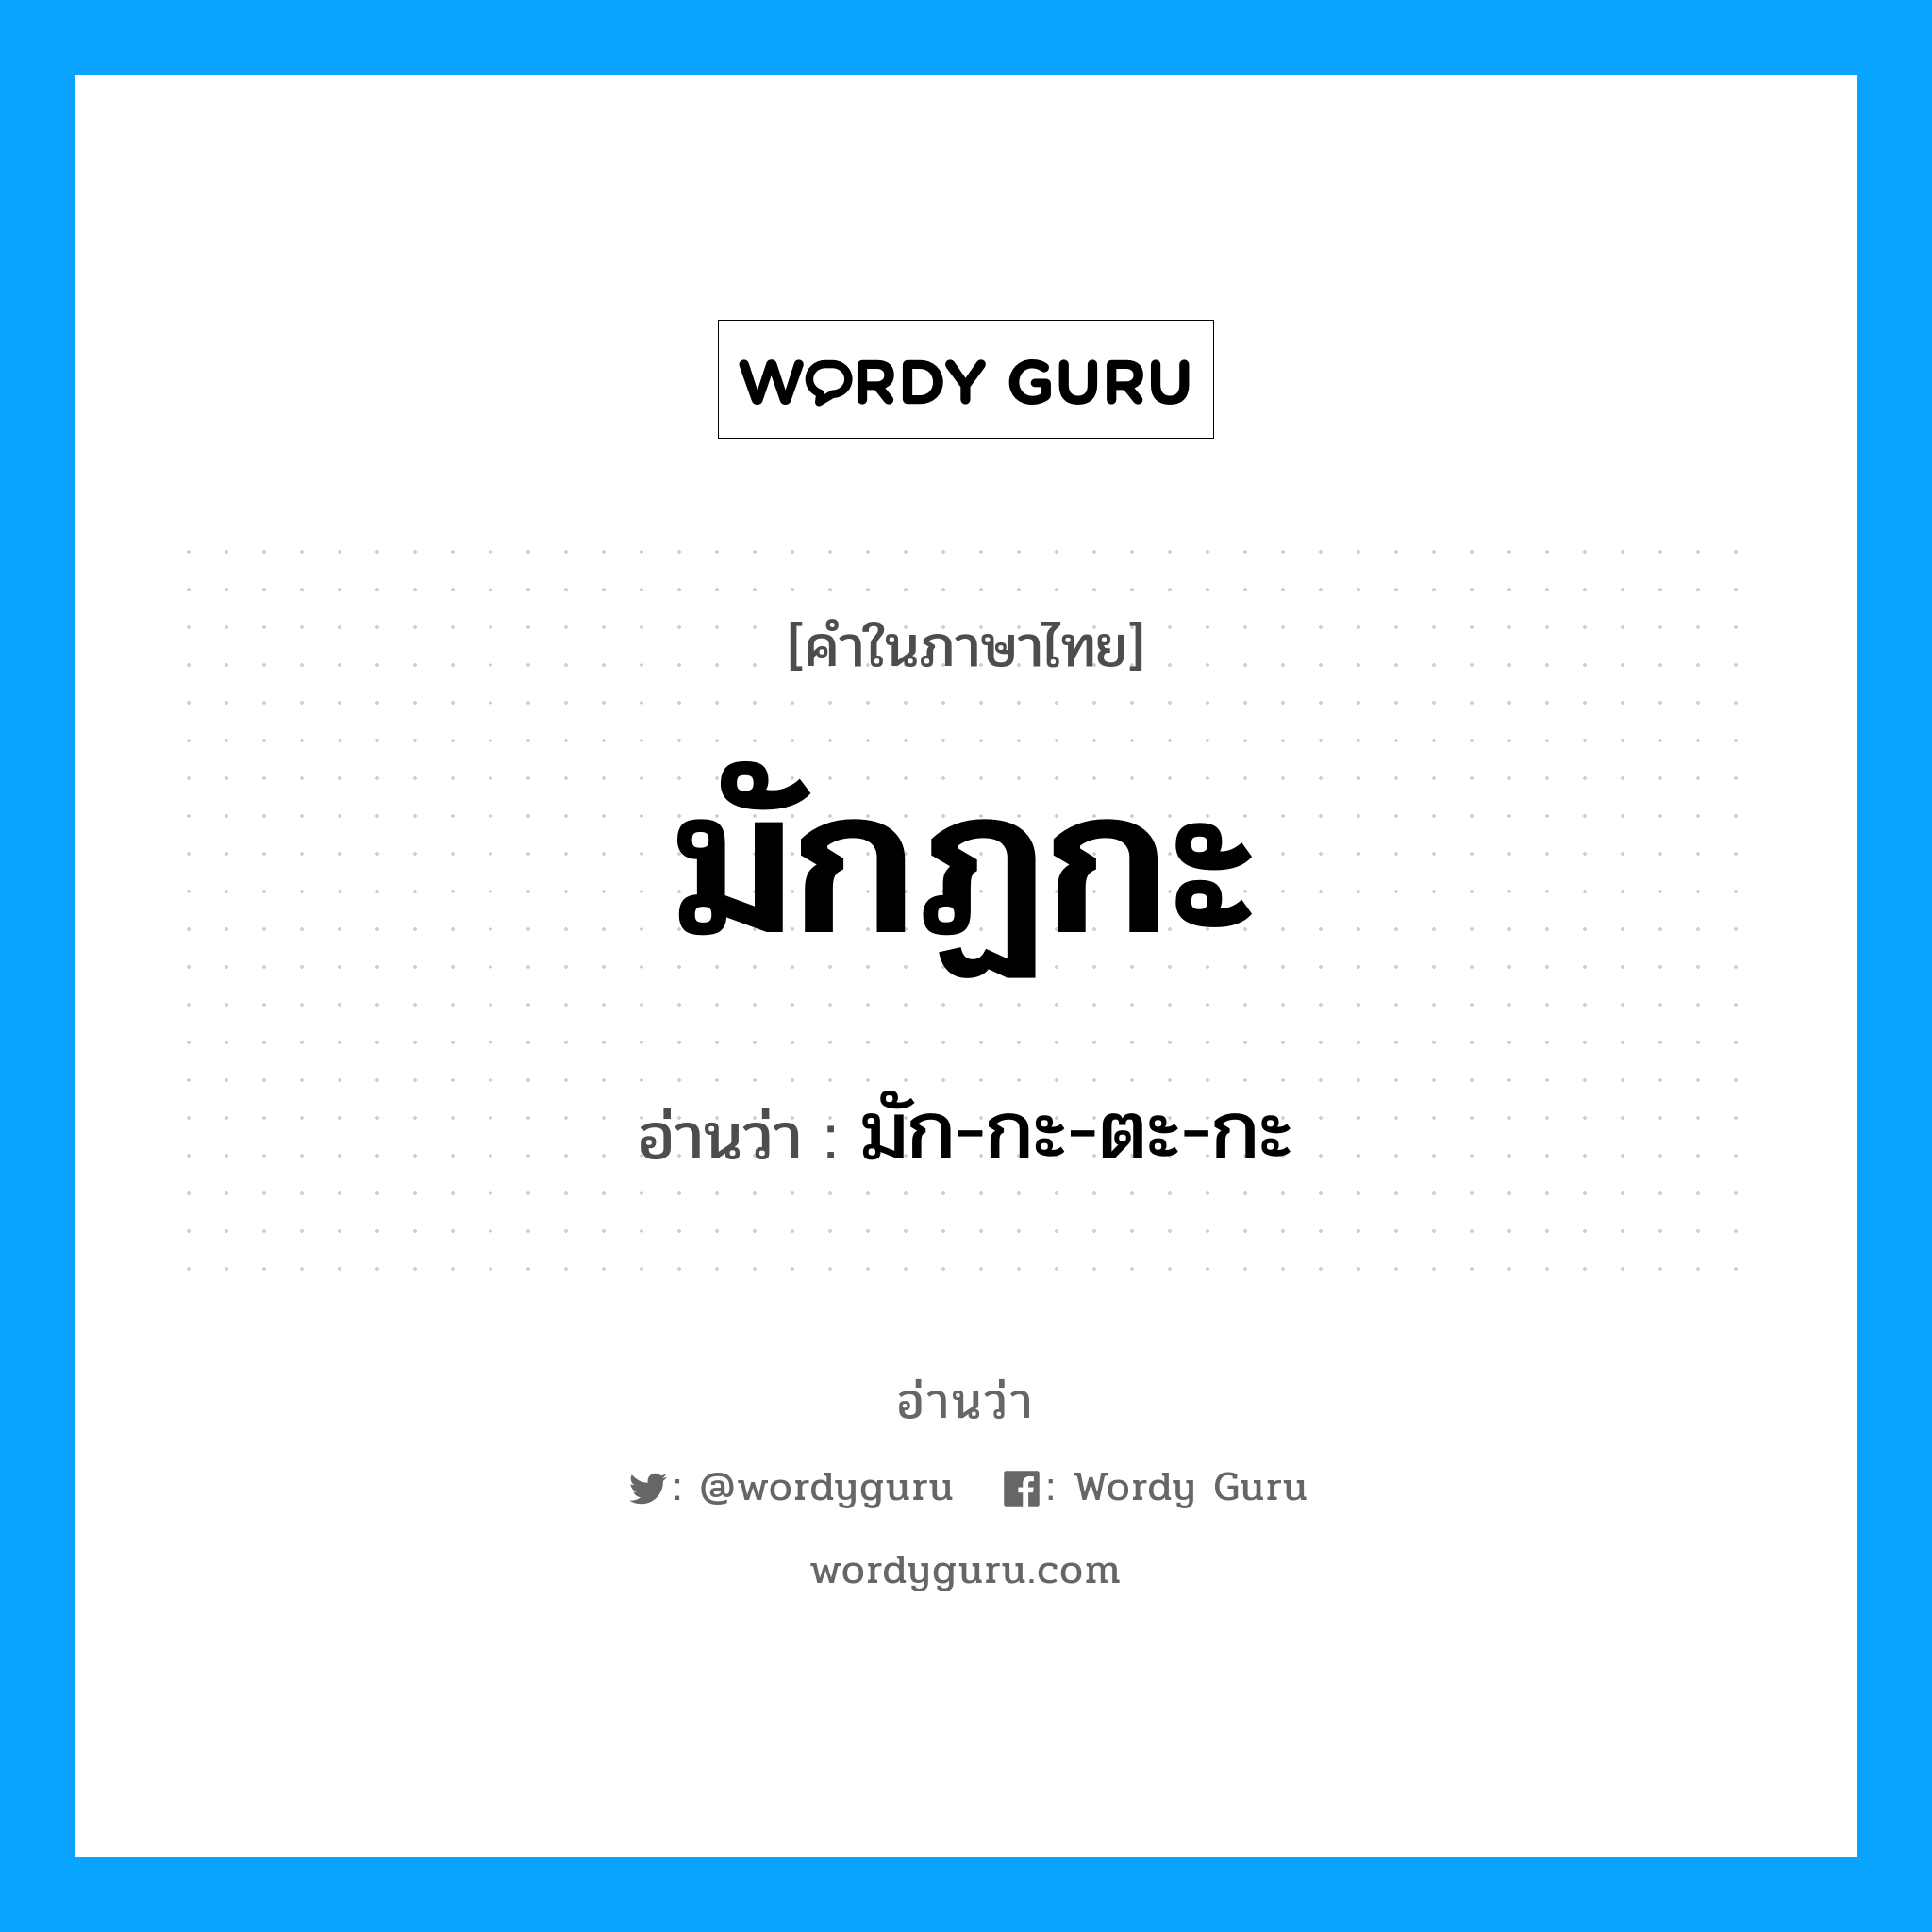 มัก-กะ-ตะ-กะ เป็นคำอ่านของคำไหน?, คำในภาษาไทย มัก-กะ-ตะ-กะ อ่านว่า มักฏกะ